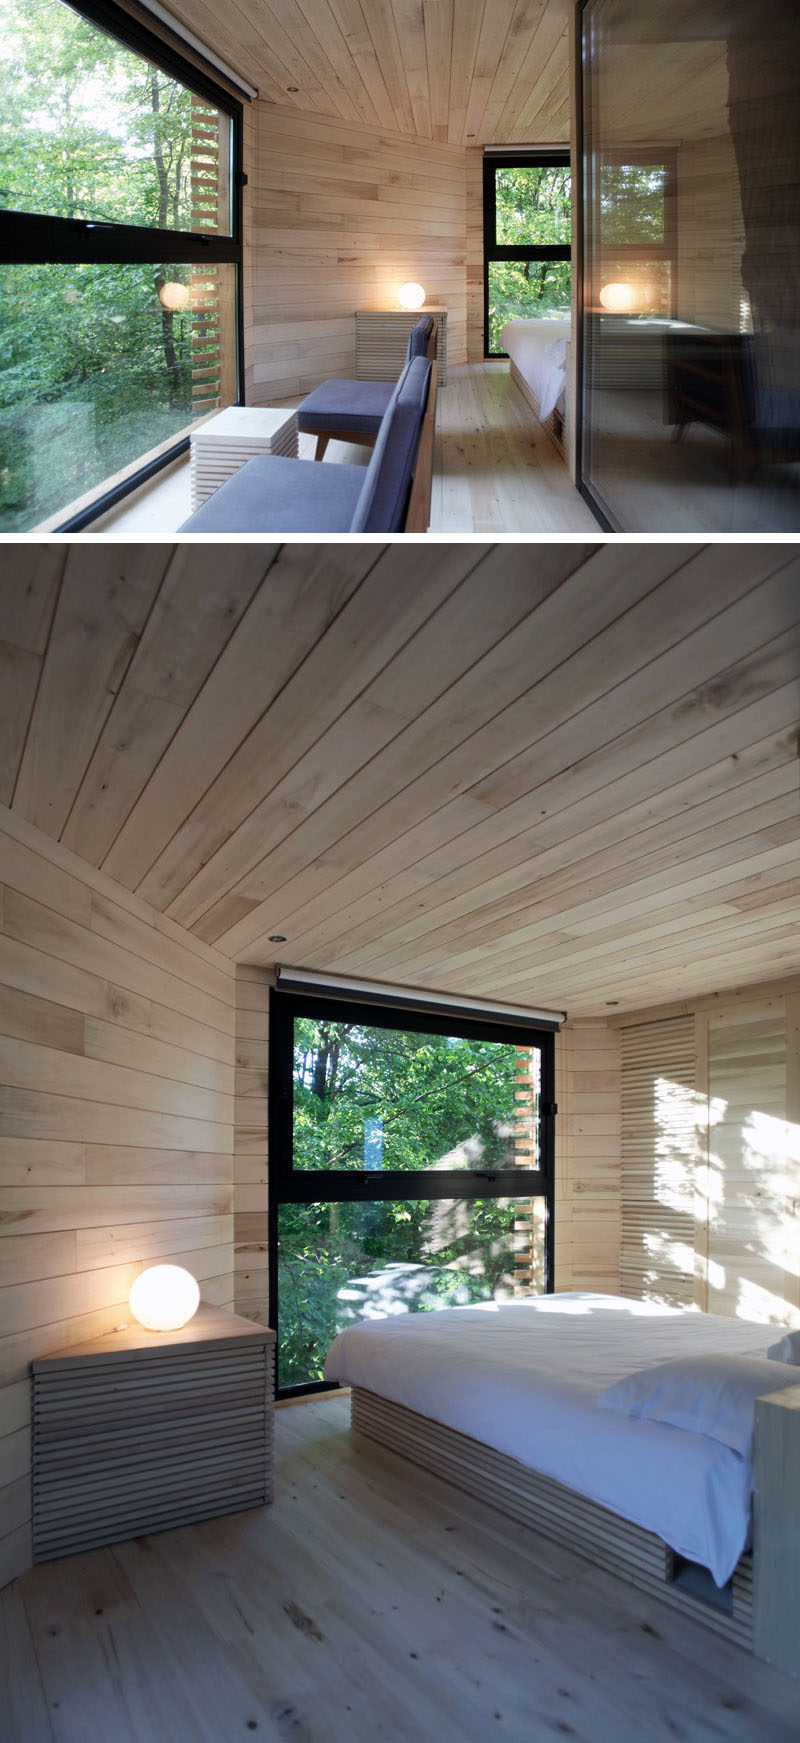 Bên trong ngôi nhà cây hiện đại này, nội thất bằng gỗ được làm từ cây dương, và khu vực tiếp khách nhỏ và phòng ngủ cung cấp một nơi thư giãn thoải mái.  #ModernTreeHouse #Poplar #WoodInterior